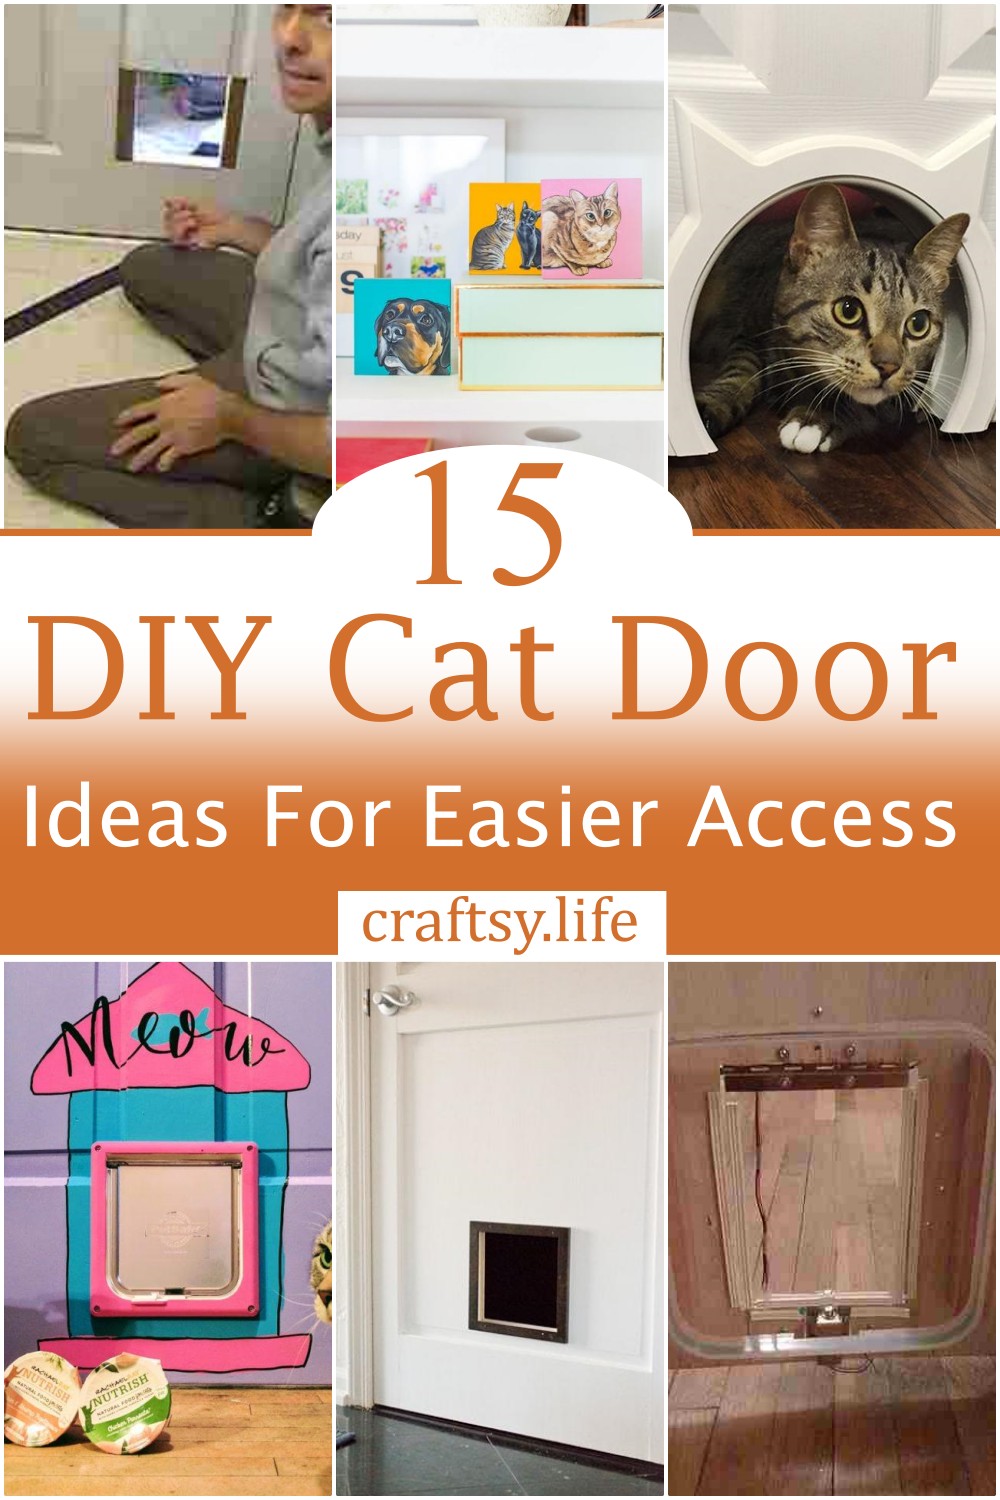 DIY Cat Door Ideas